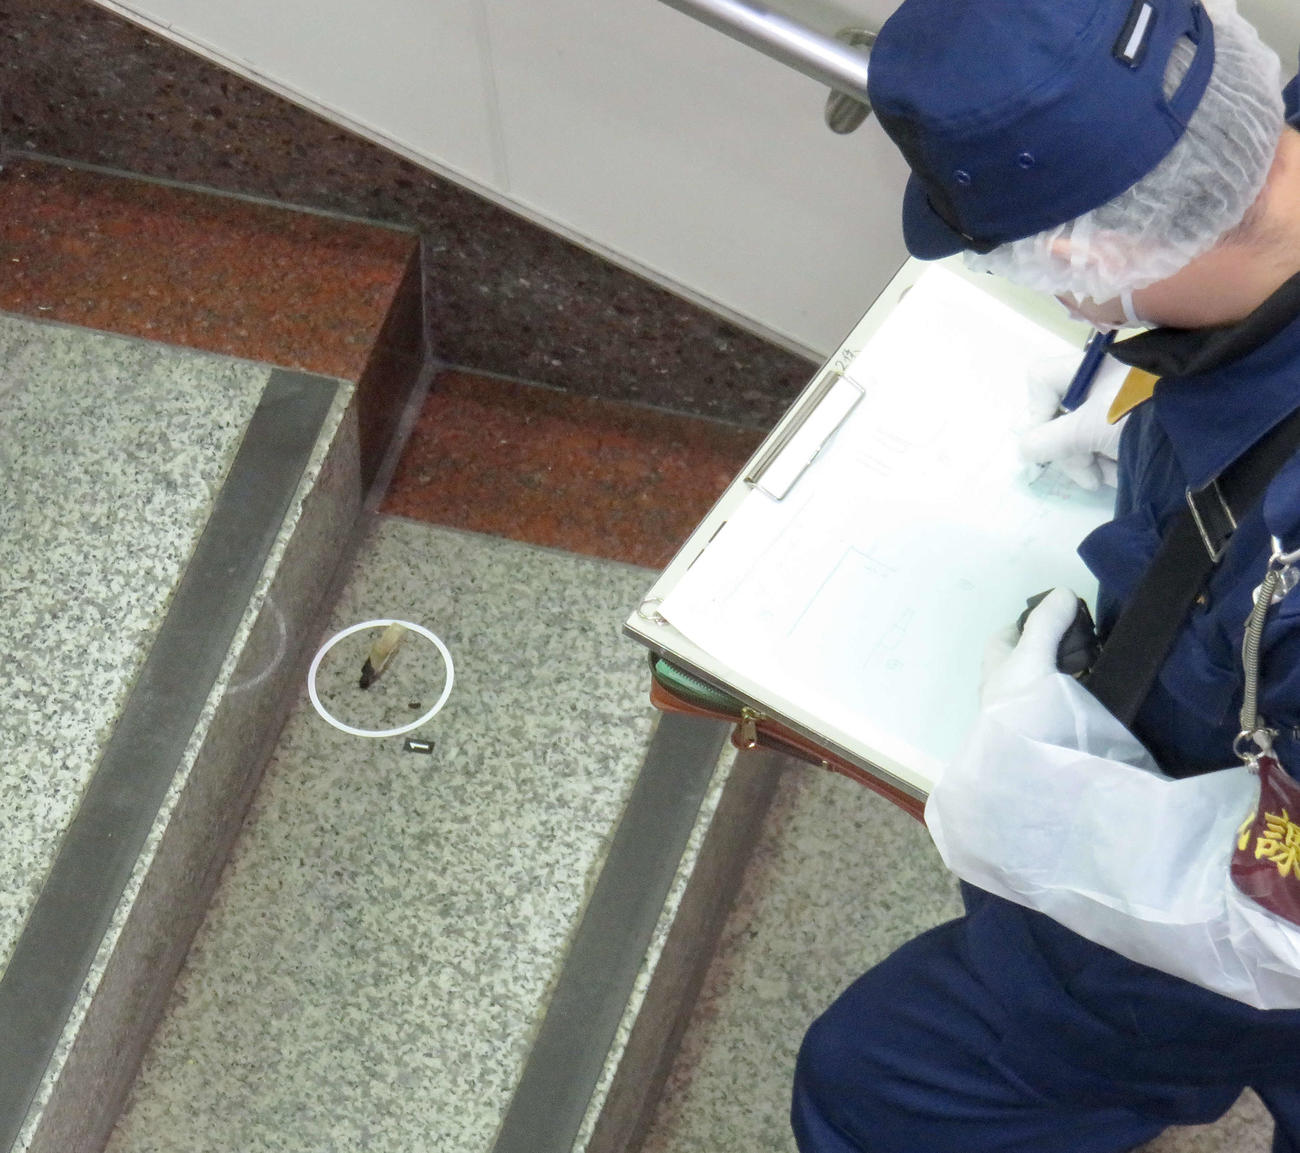 15日、着火剤のようなものがまかれた東京メトロ南北線東大前駅で燃え跡とみられるものをチェックする捜査官